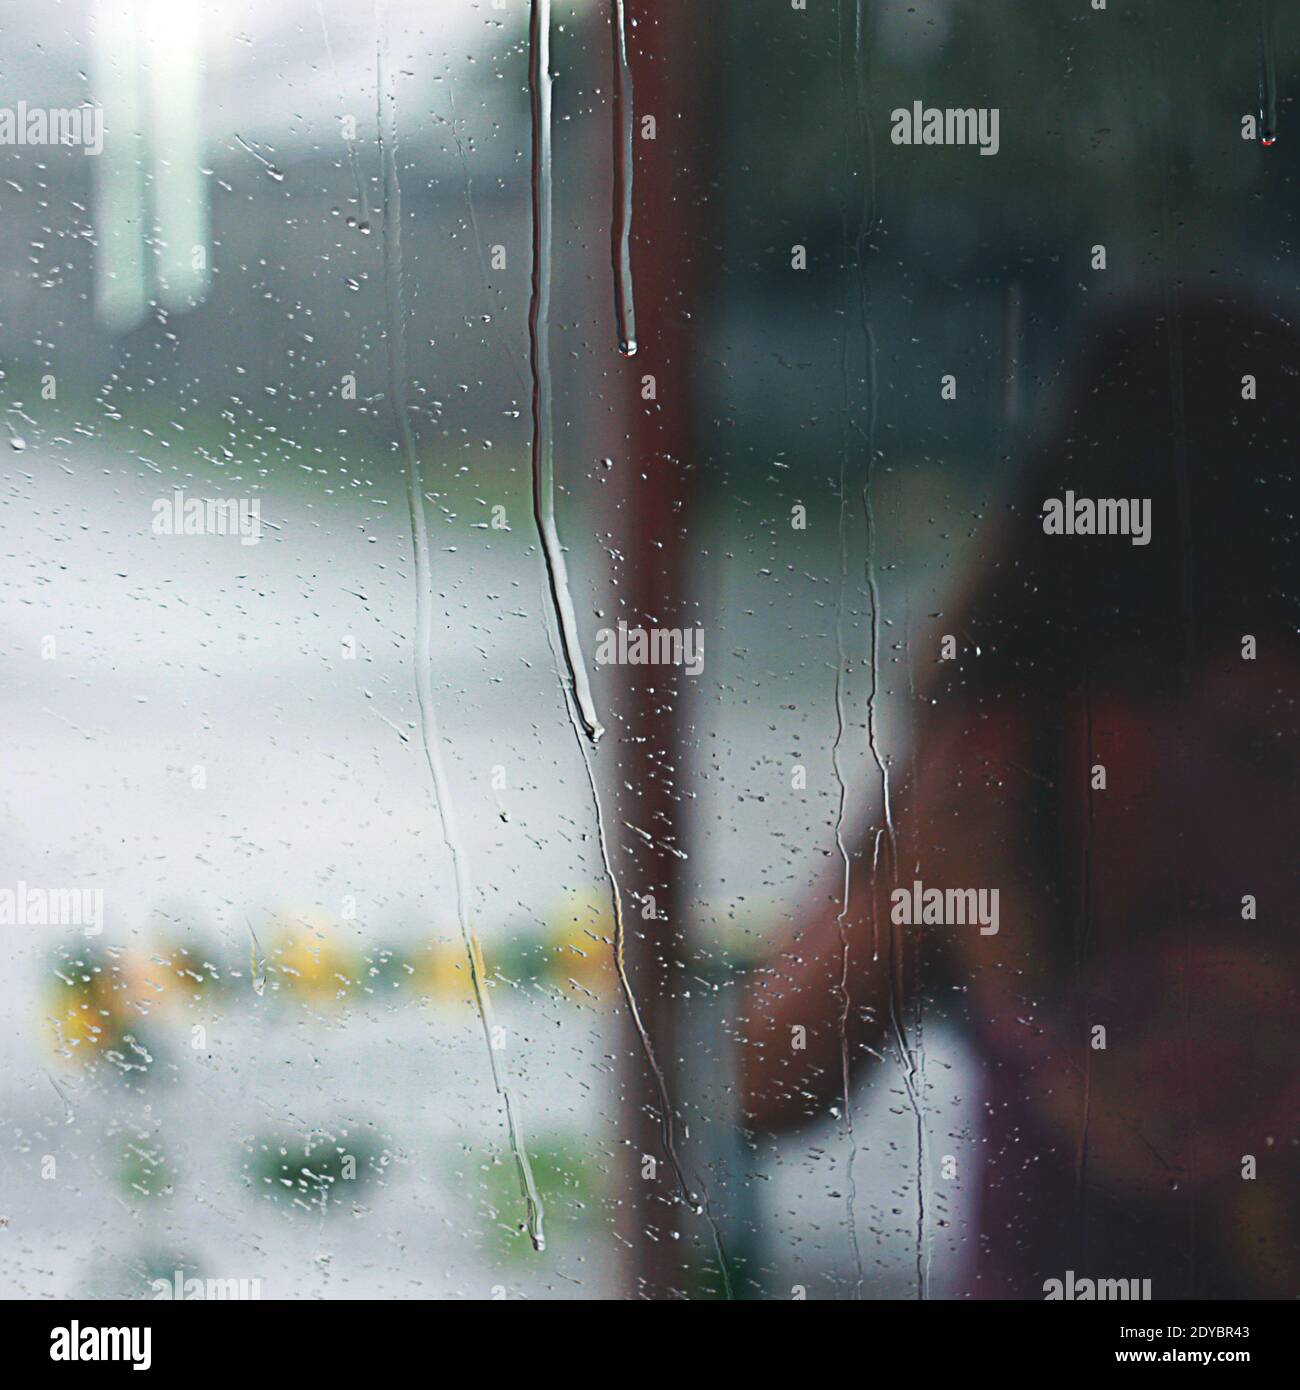 Le gocce di pioggia scorrono verso il basso, dietro il vetro la silhouette di una ragazza viene allontanata dallo spettatore Foto Stock